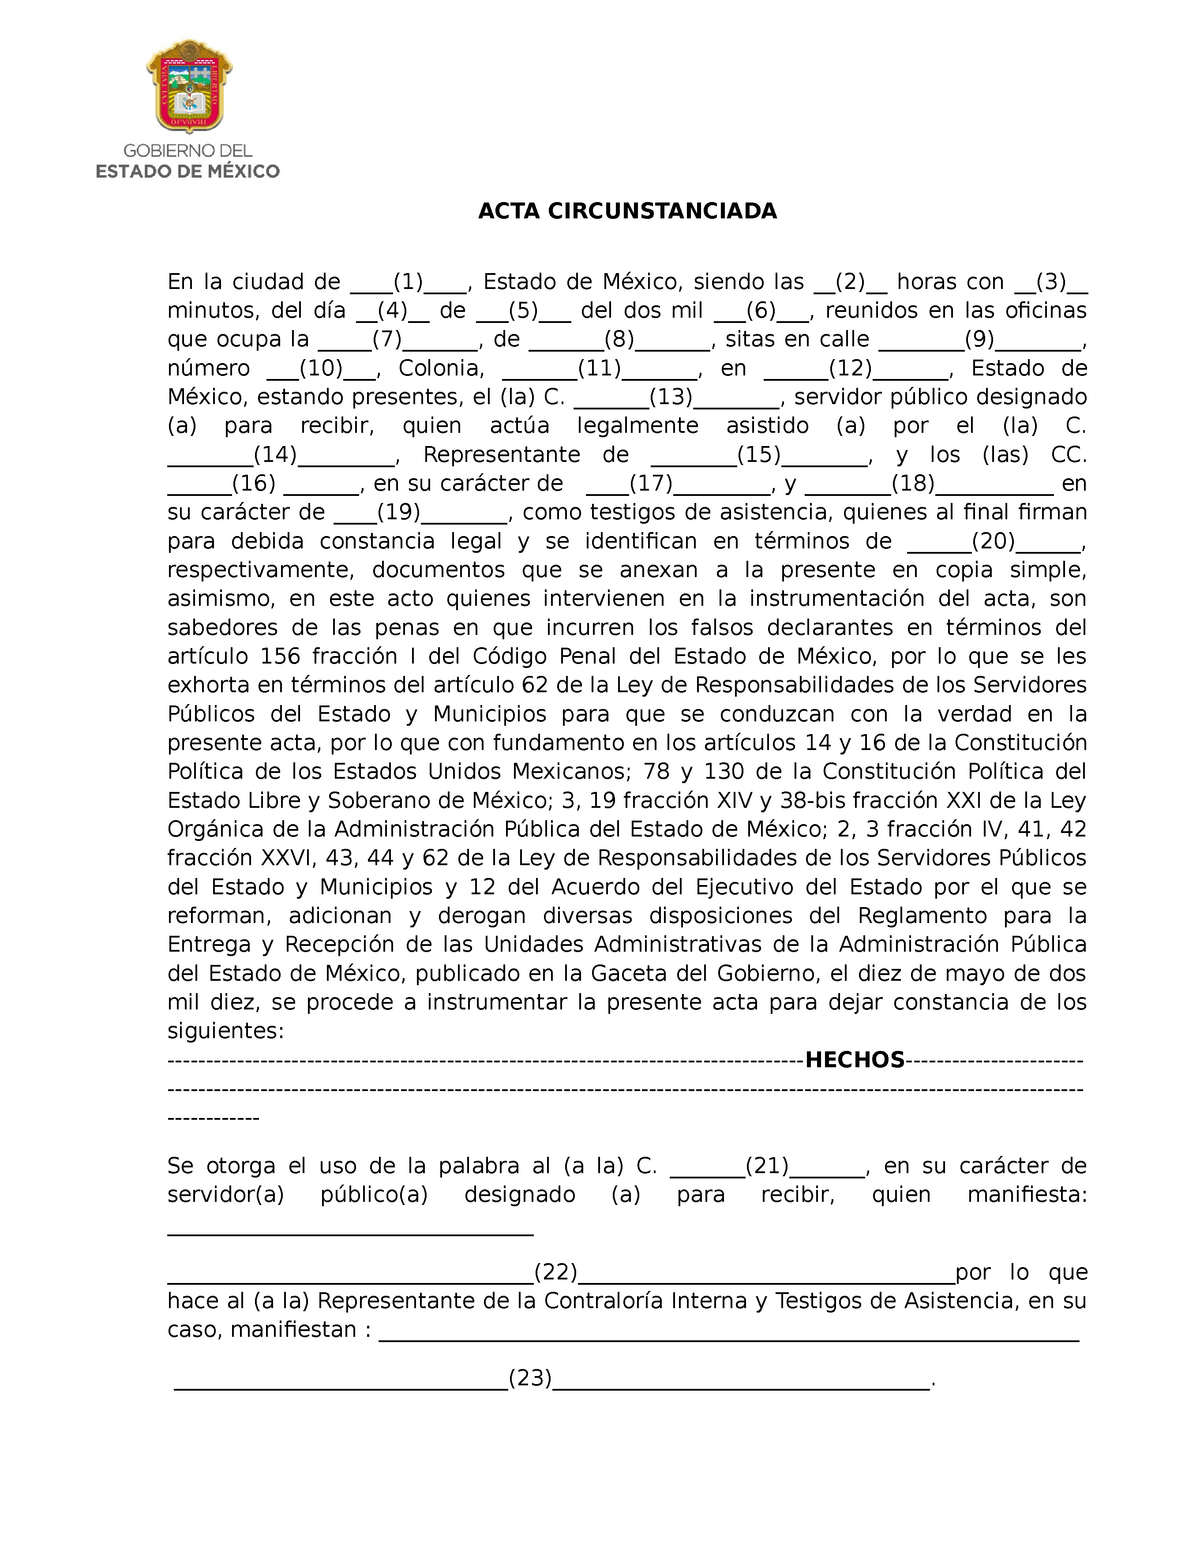 Acta circunstanciada - Ejemplo acta circuntanciada - ACTA CIRCUNSTANCIADA  En la ciudad de (1), - Studocu